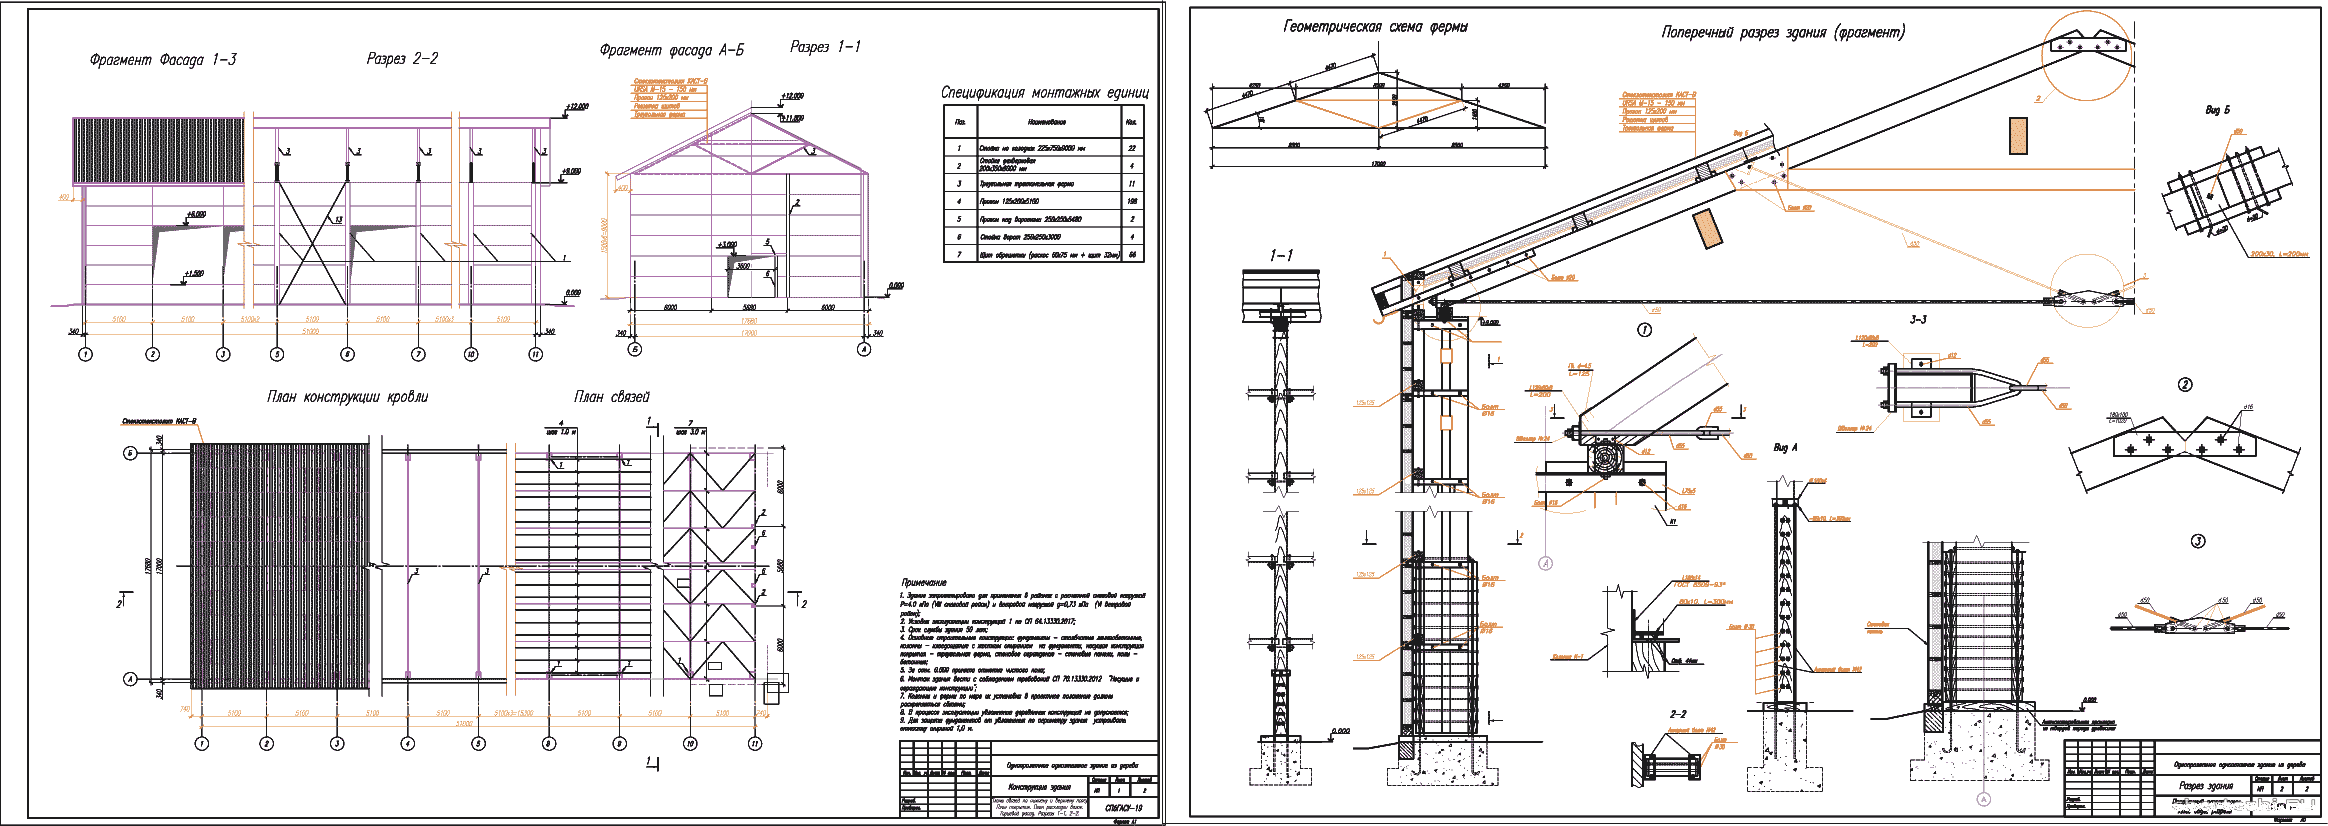 Курсовой проект - Проектирование однопролетного деревянного промышленного здания 51 х 17 м